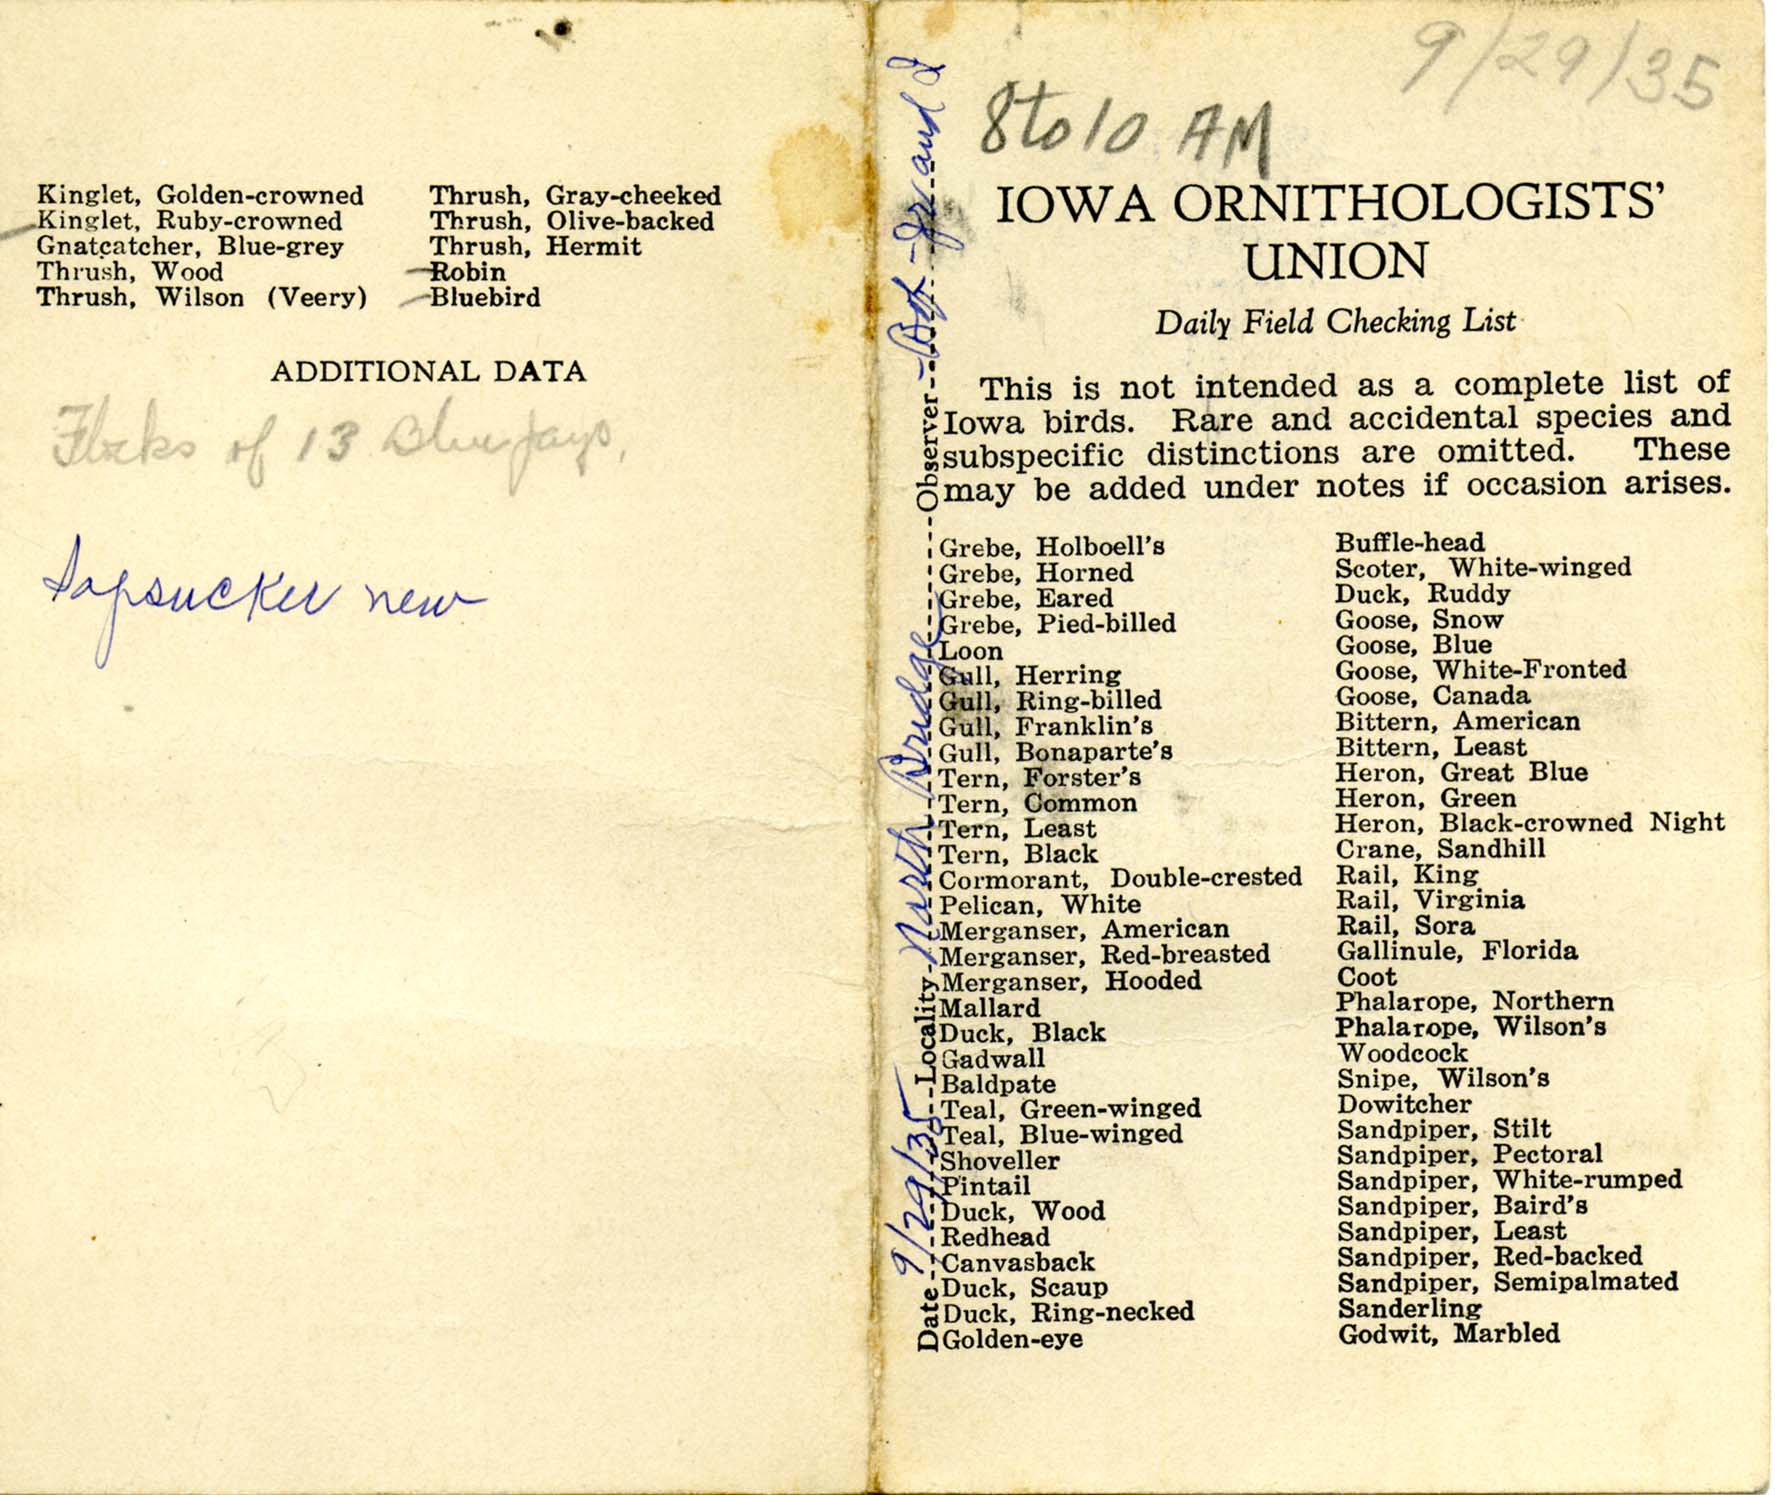 Daily field checking list, Walter Rosene, September 29, 1935